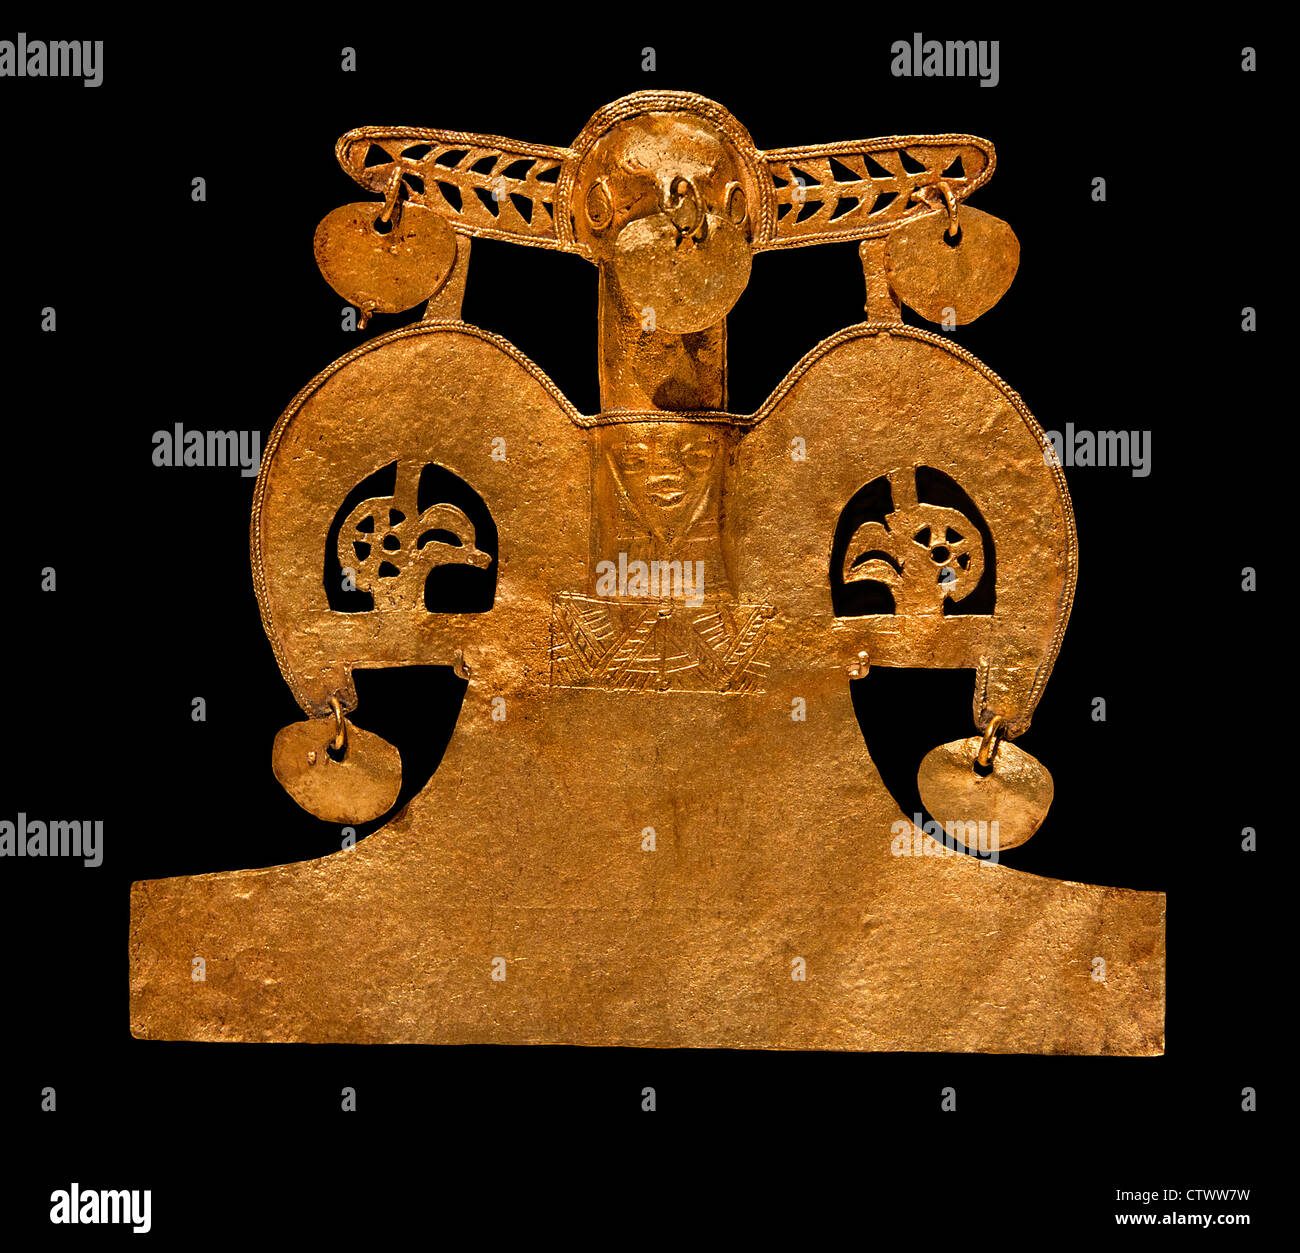 Vogel-Anhänger 10. – 16. Jahrhundert Kolumbien Kultur Muisca Gold H. 4 X W. 4 3/8 x D. 3/4 Zoll (10,2 x 11,1 x 1,9 cm) kolumbianischen Stockfoto